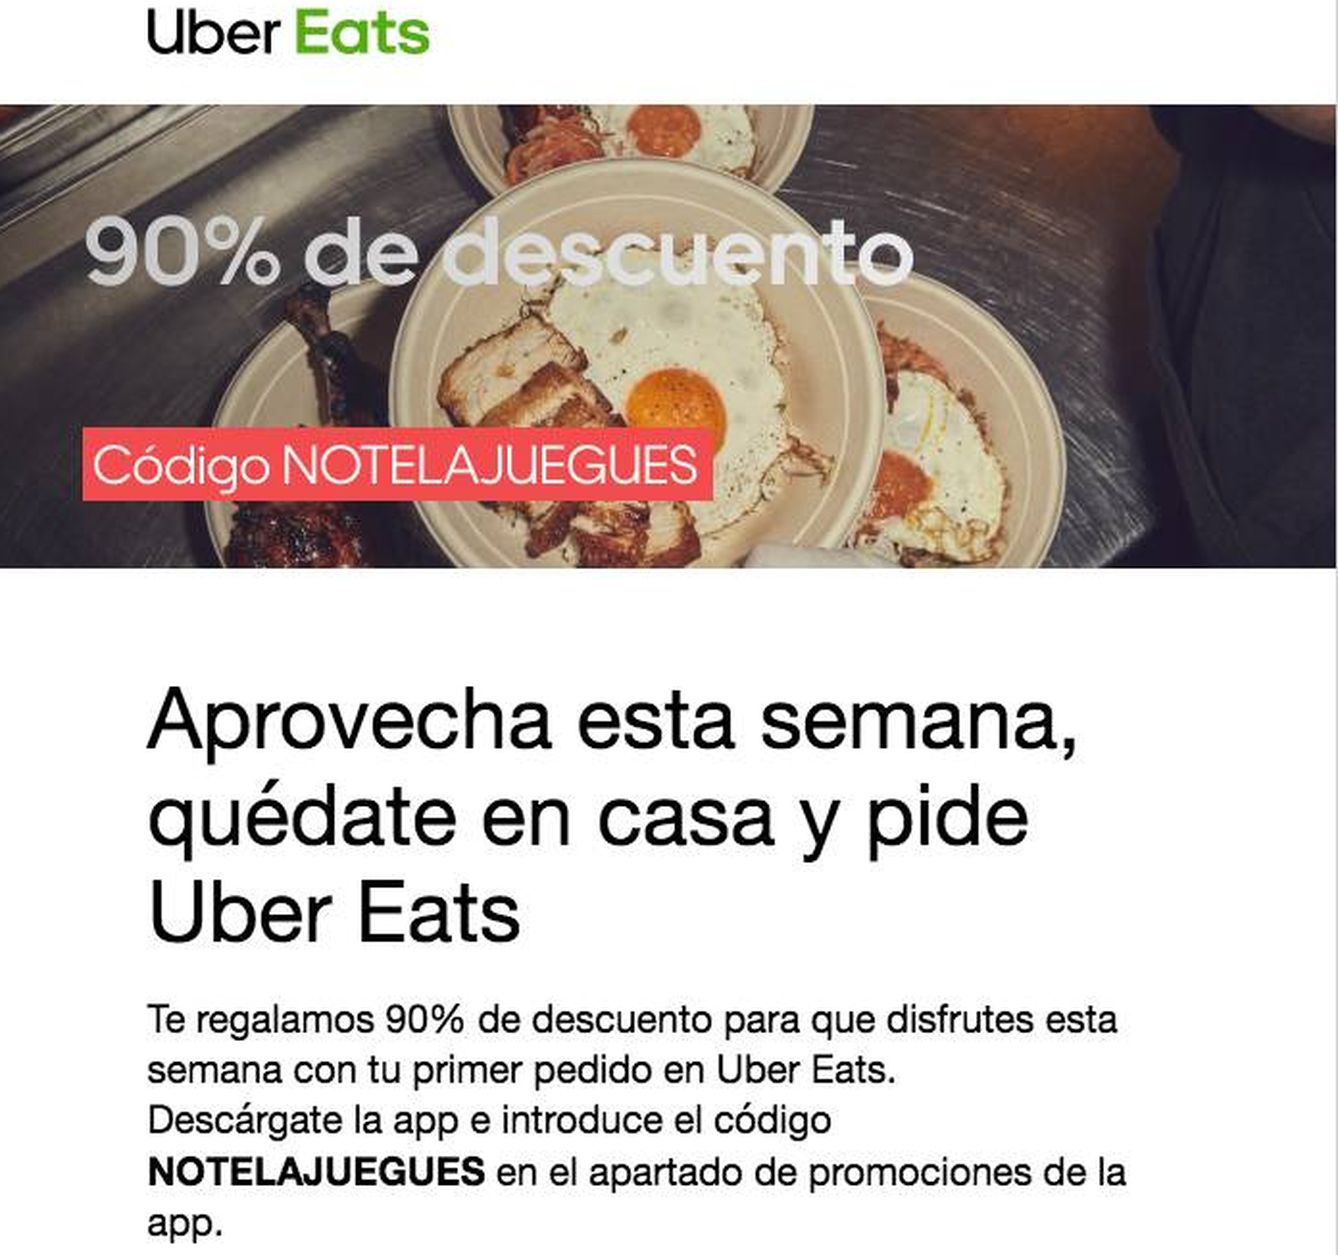 Promoción de Uber Eats para esta semana.